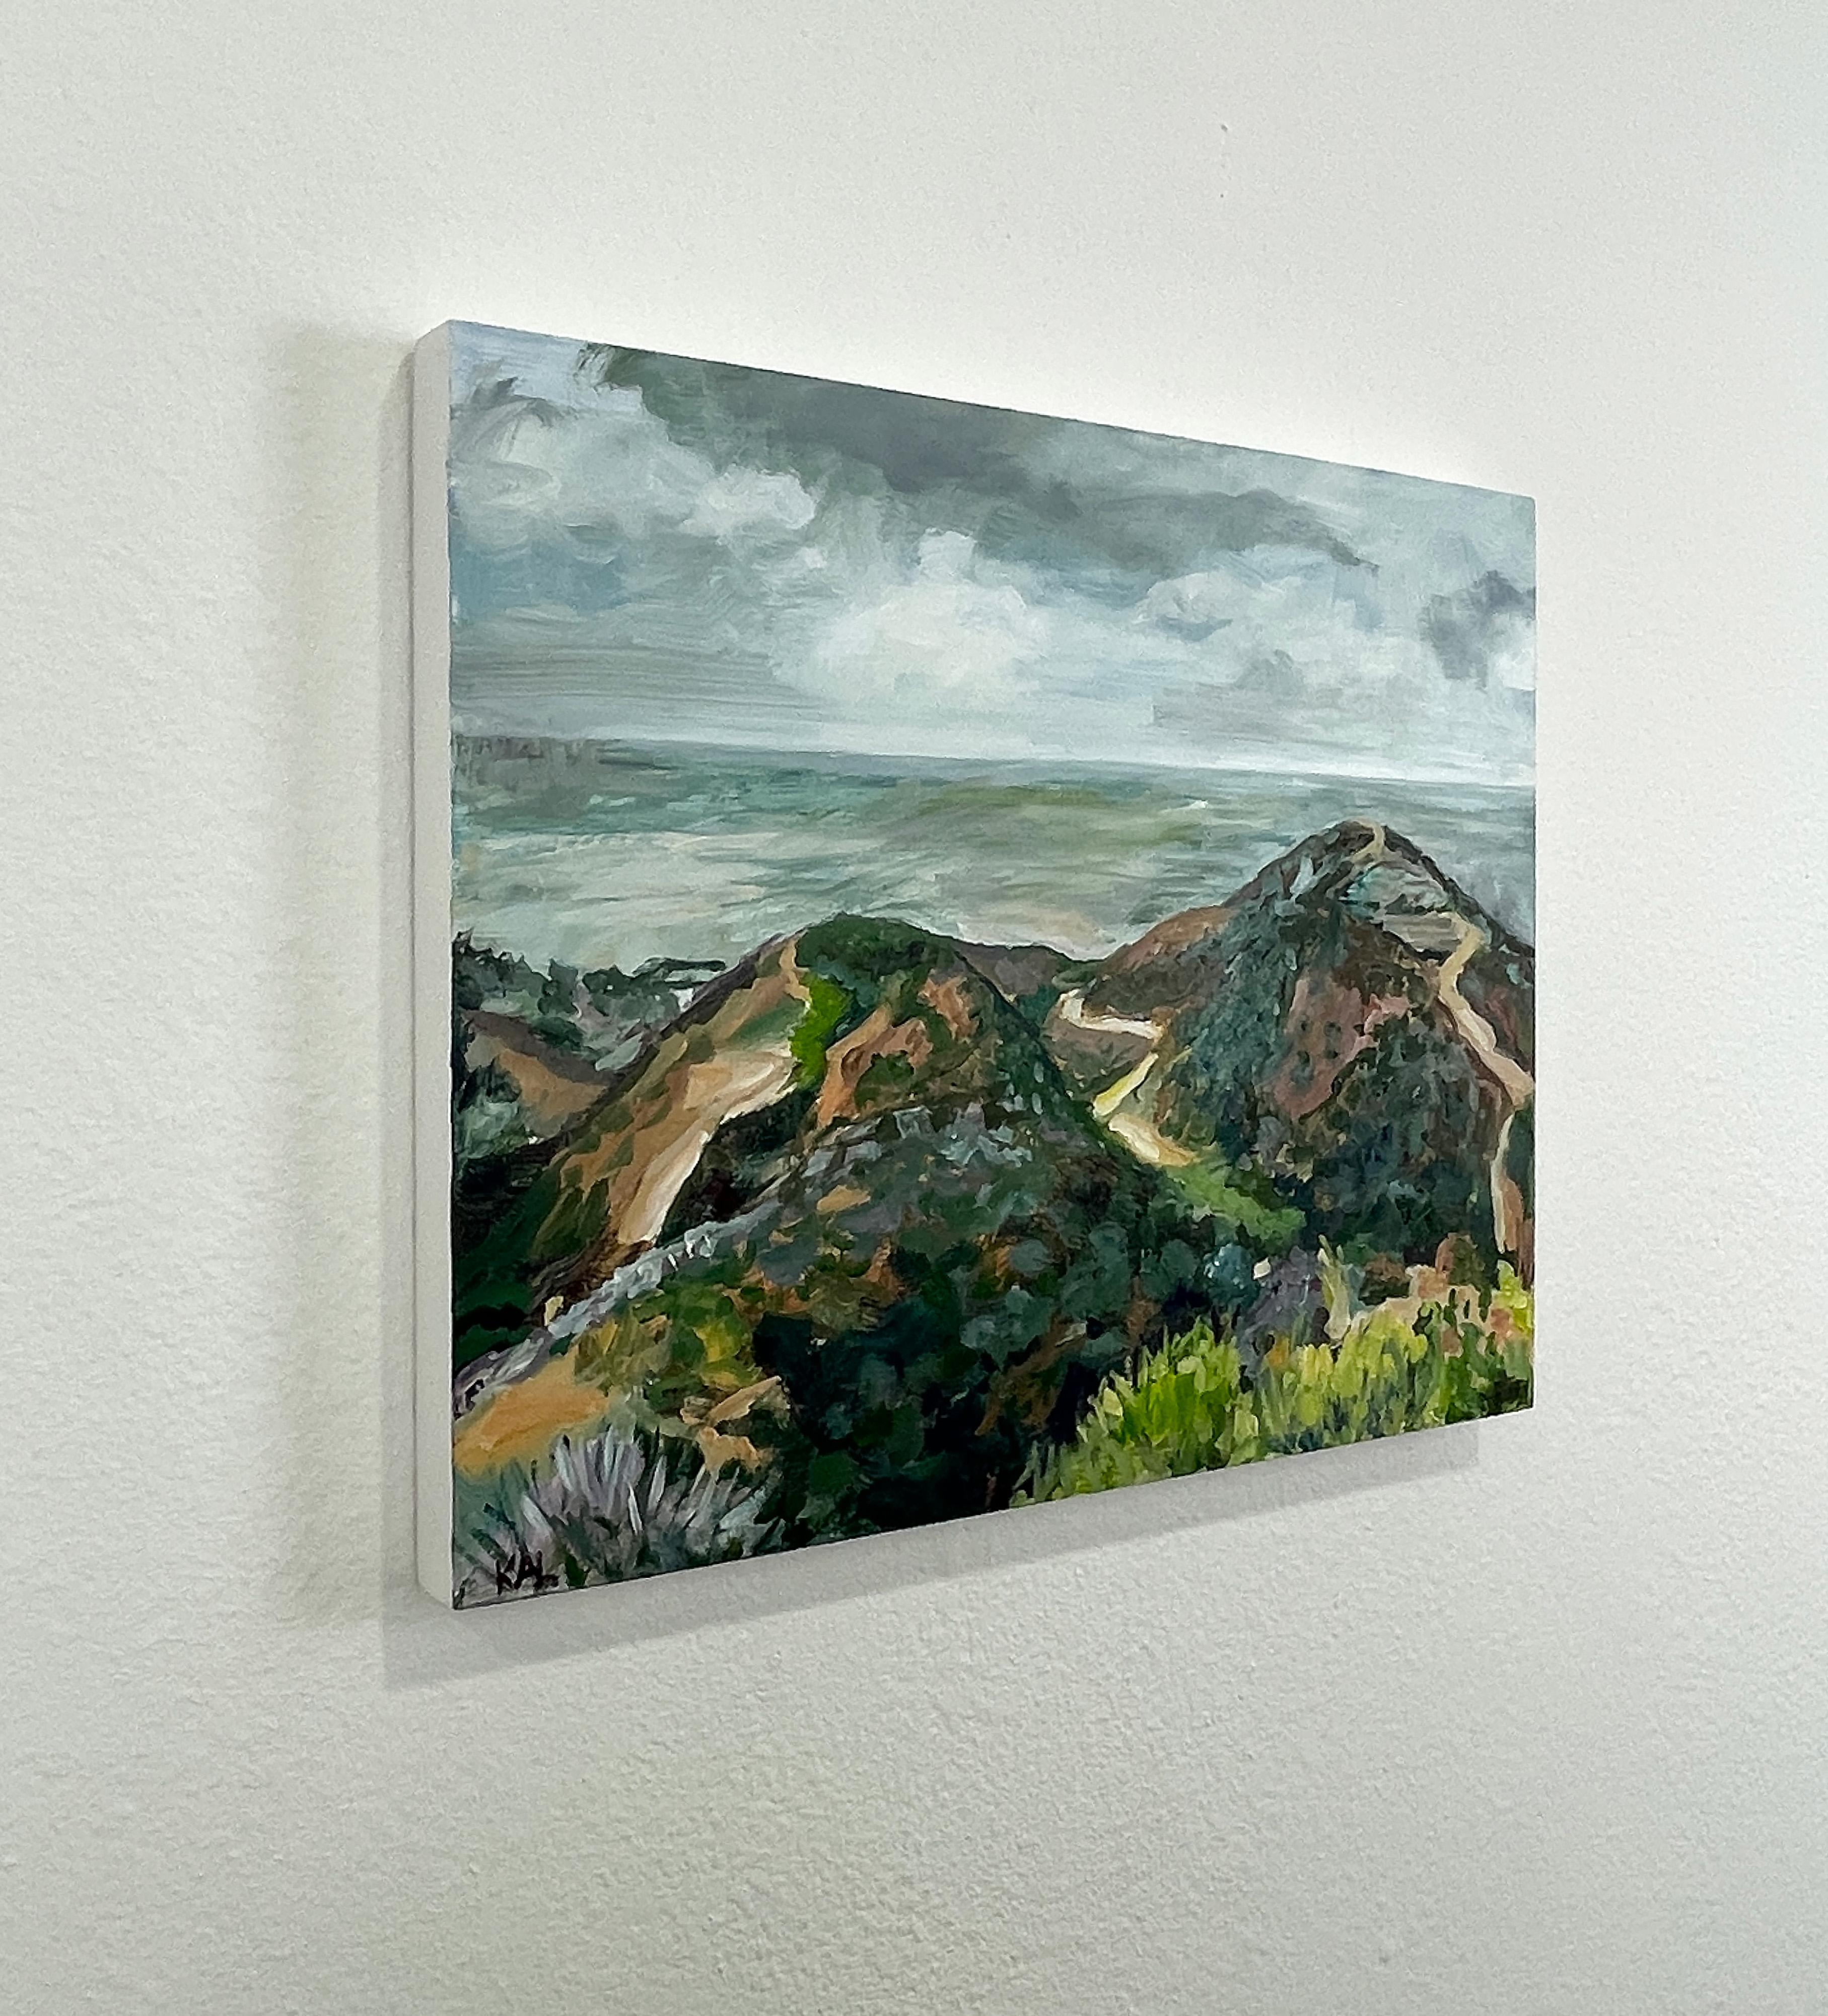 S'appuyant sur l'imagerie saisissante qui abonde dans le paysage californien, l'artiste queer Kory Alexander crée des peintures oniriques inondées d'éclat et de mouvement. Naturellement curieuse, Nature se considère comme une tapisserie dans l'âme.